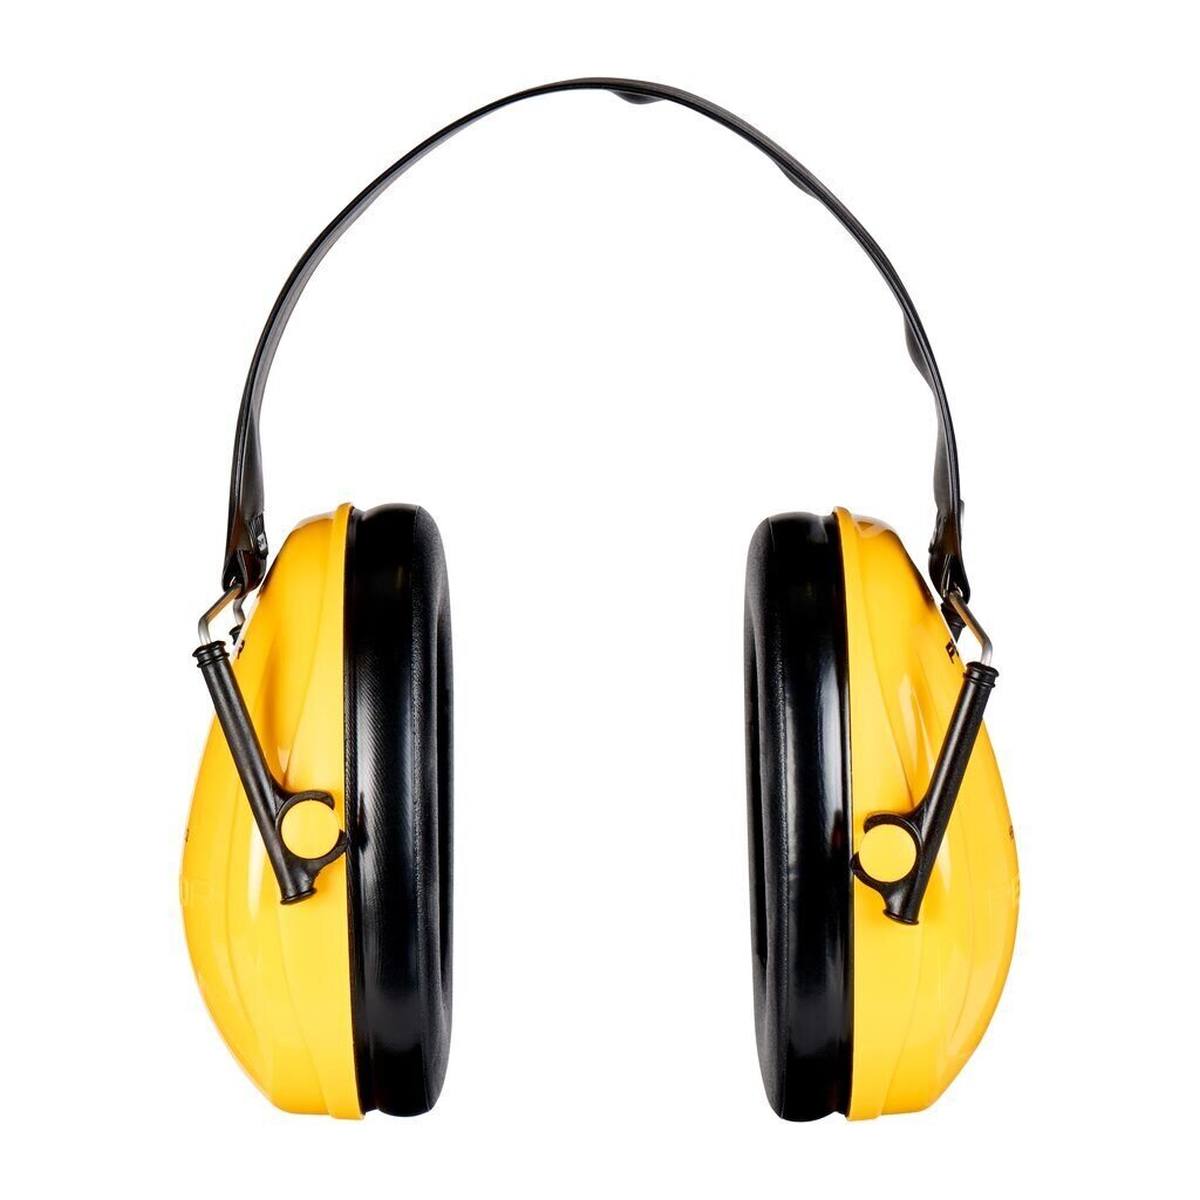 3M Peltor Optime I oorkappen, inklapbare hoofdband, geel, SNR = 28 dB, H510F